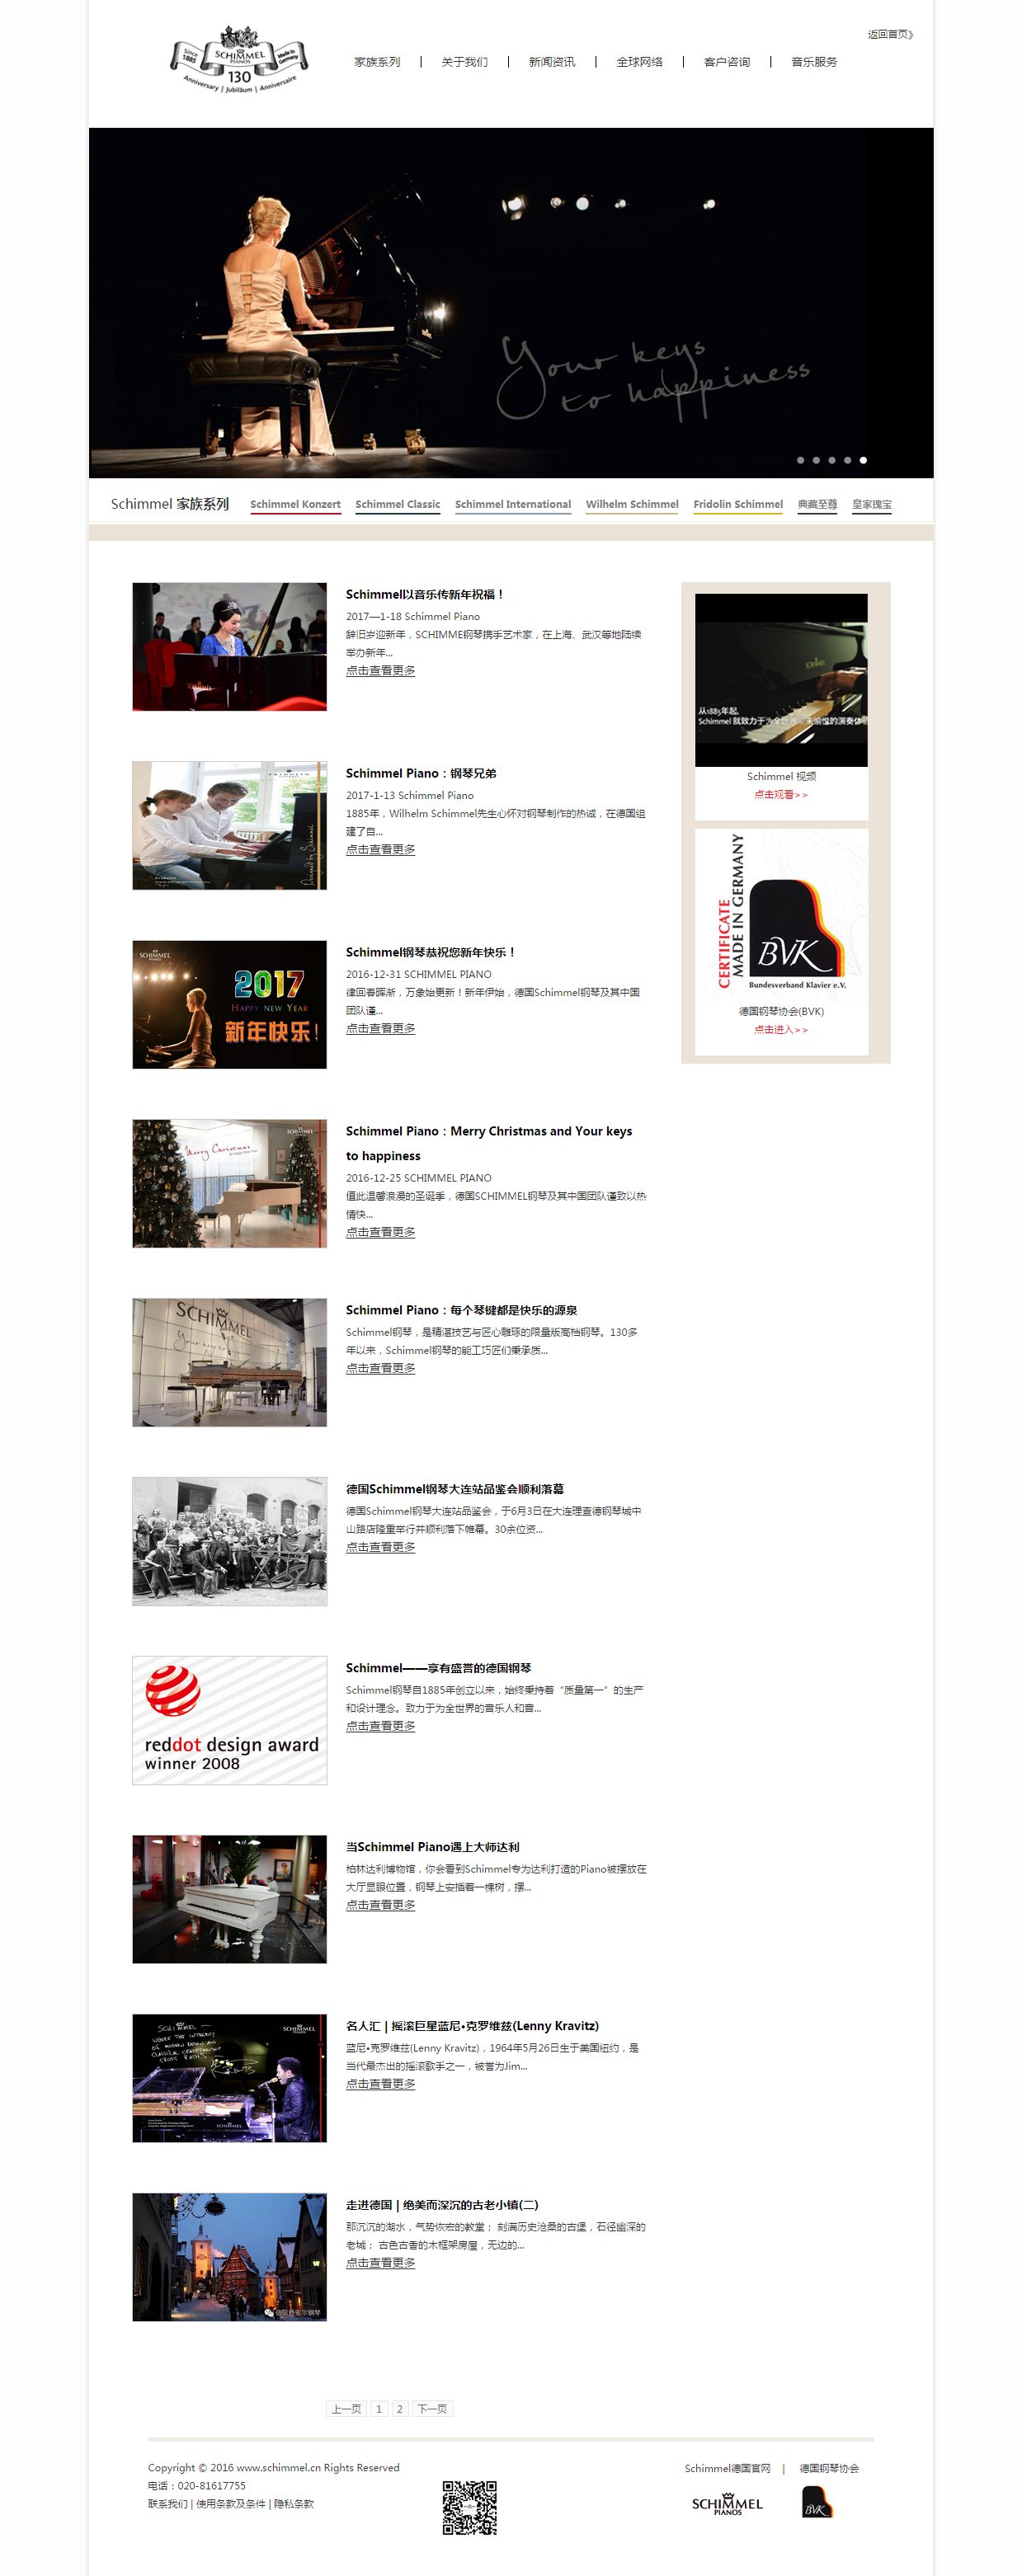 珠江钢琴（schimmel）品牌网站建设项目开通上线啦！